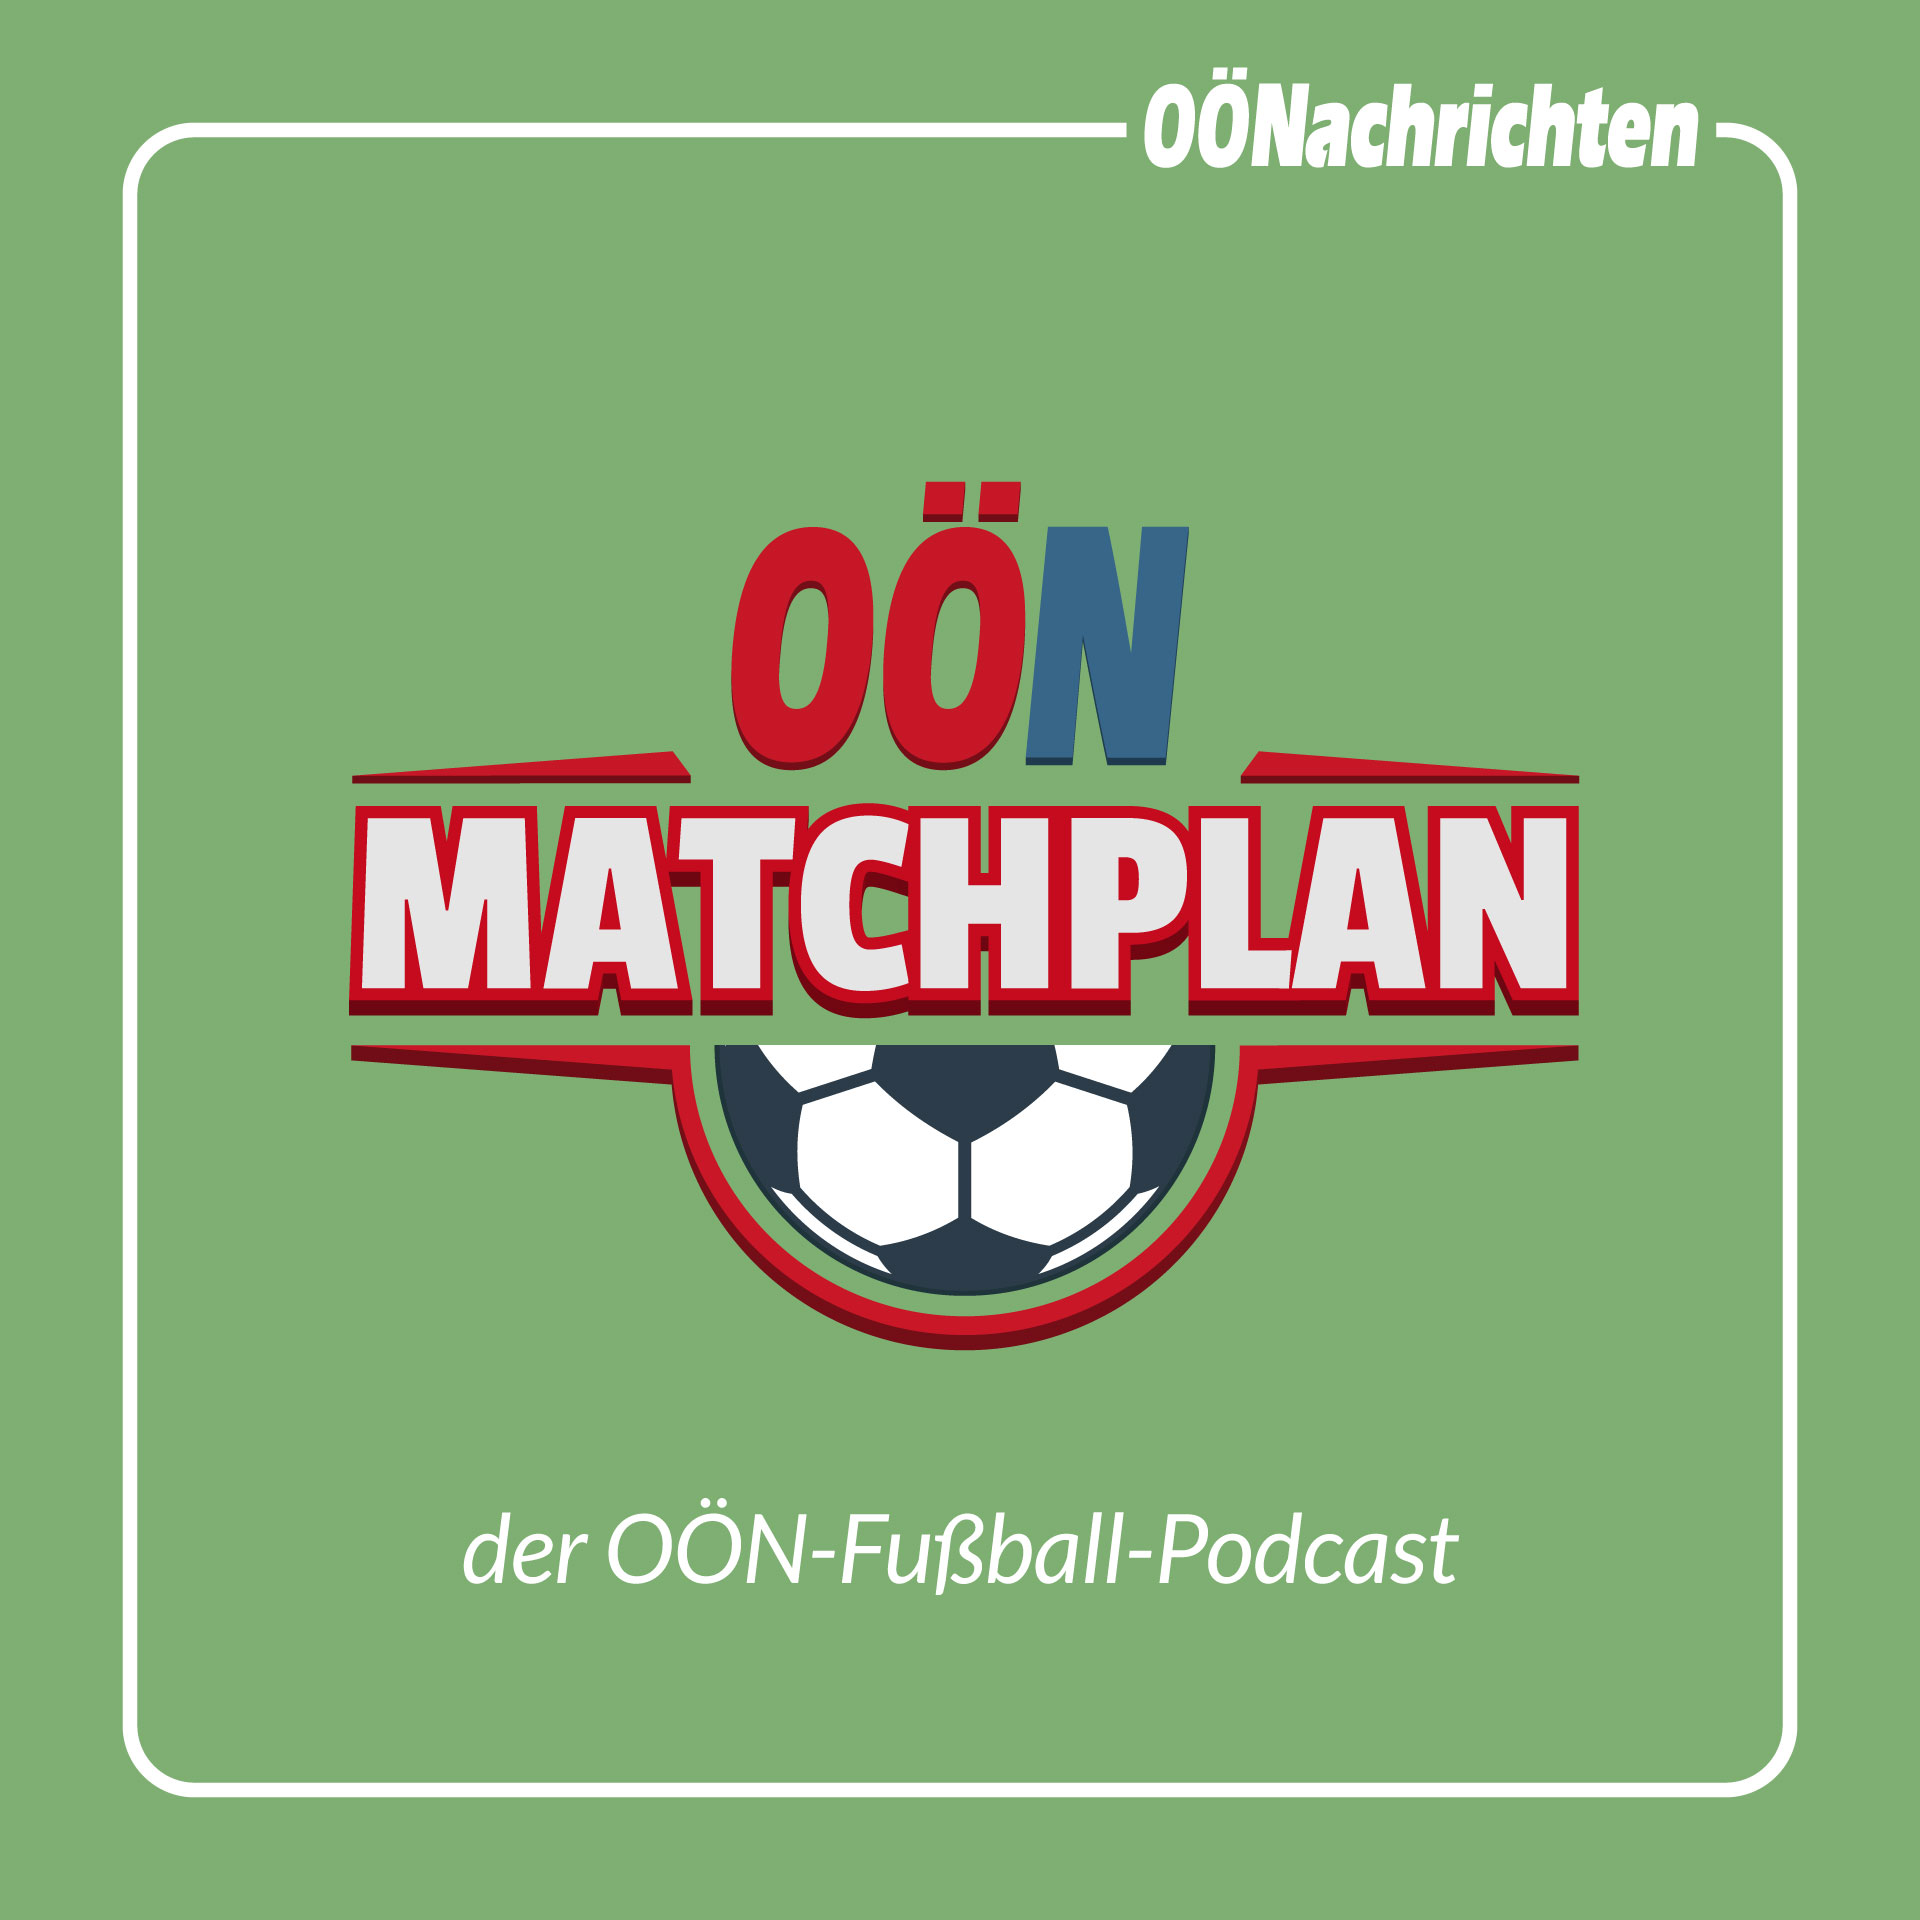 Matchplan #022 - Rangnick bleibt: "Ein wirklicher Freudentag"